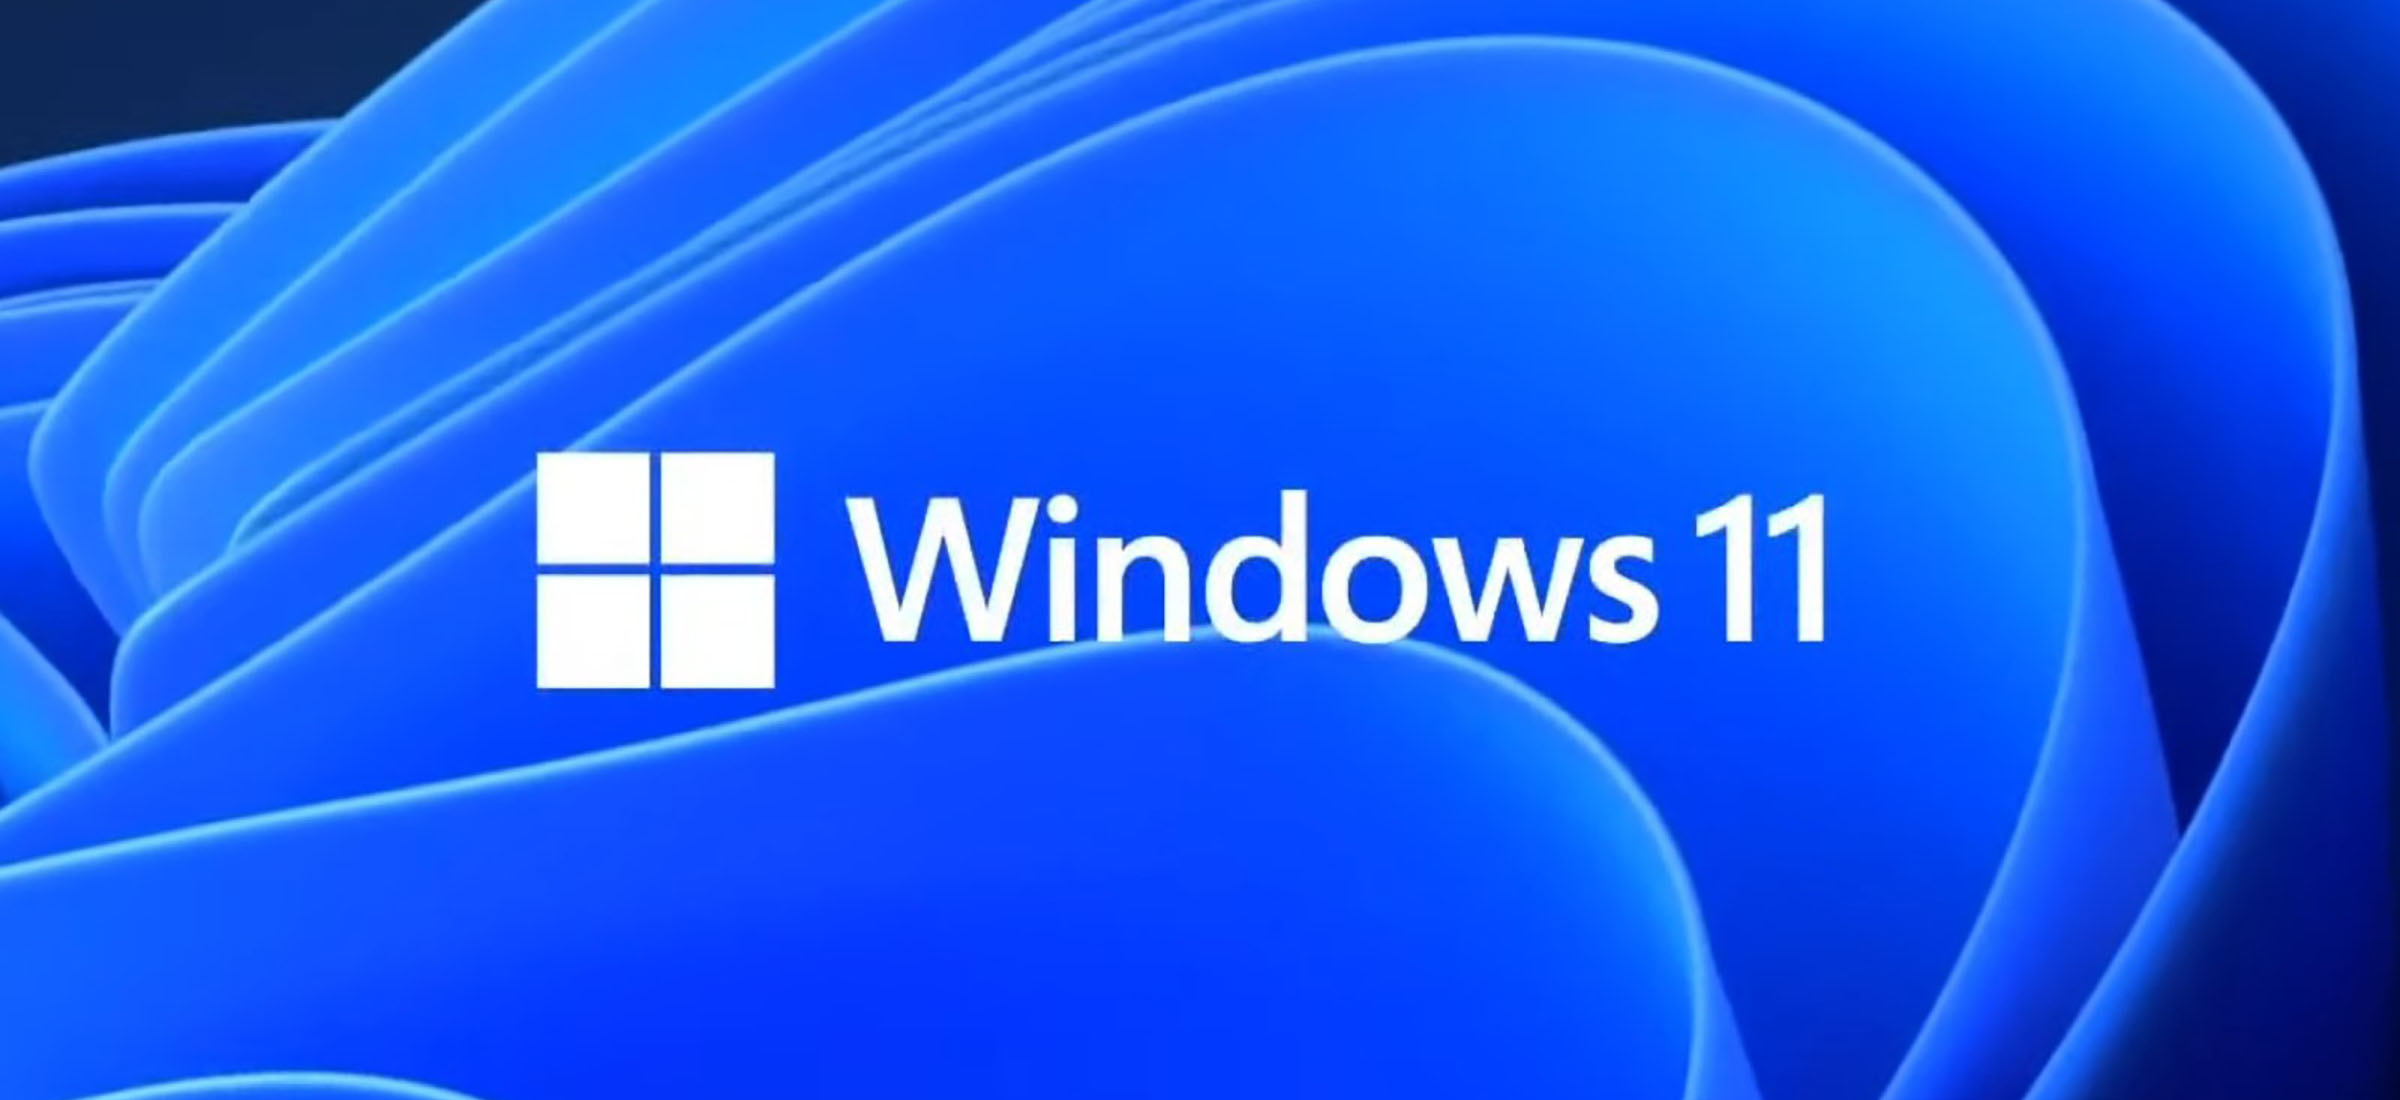 windows 11 tpm 1.2